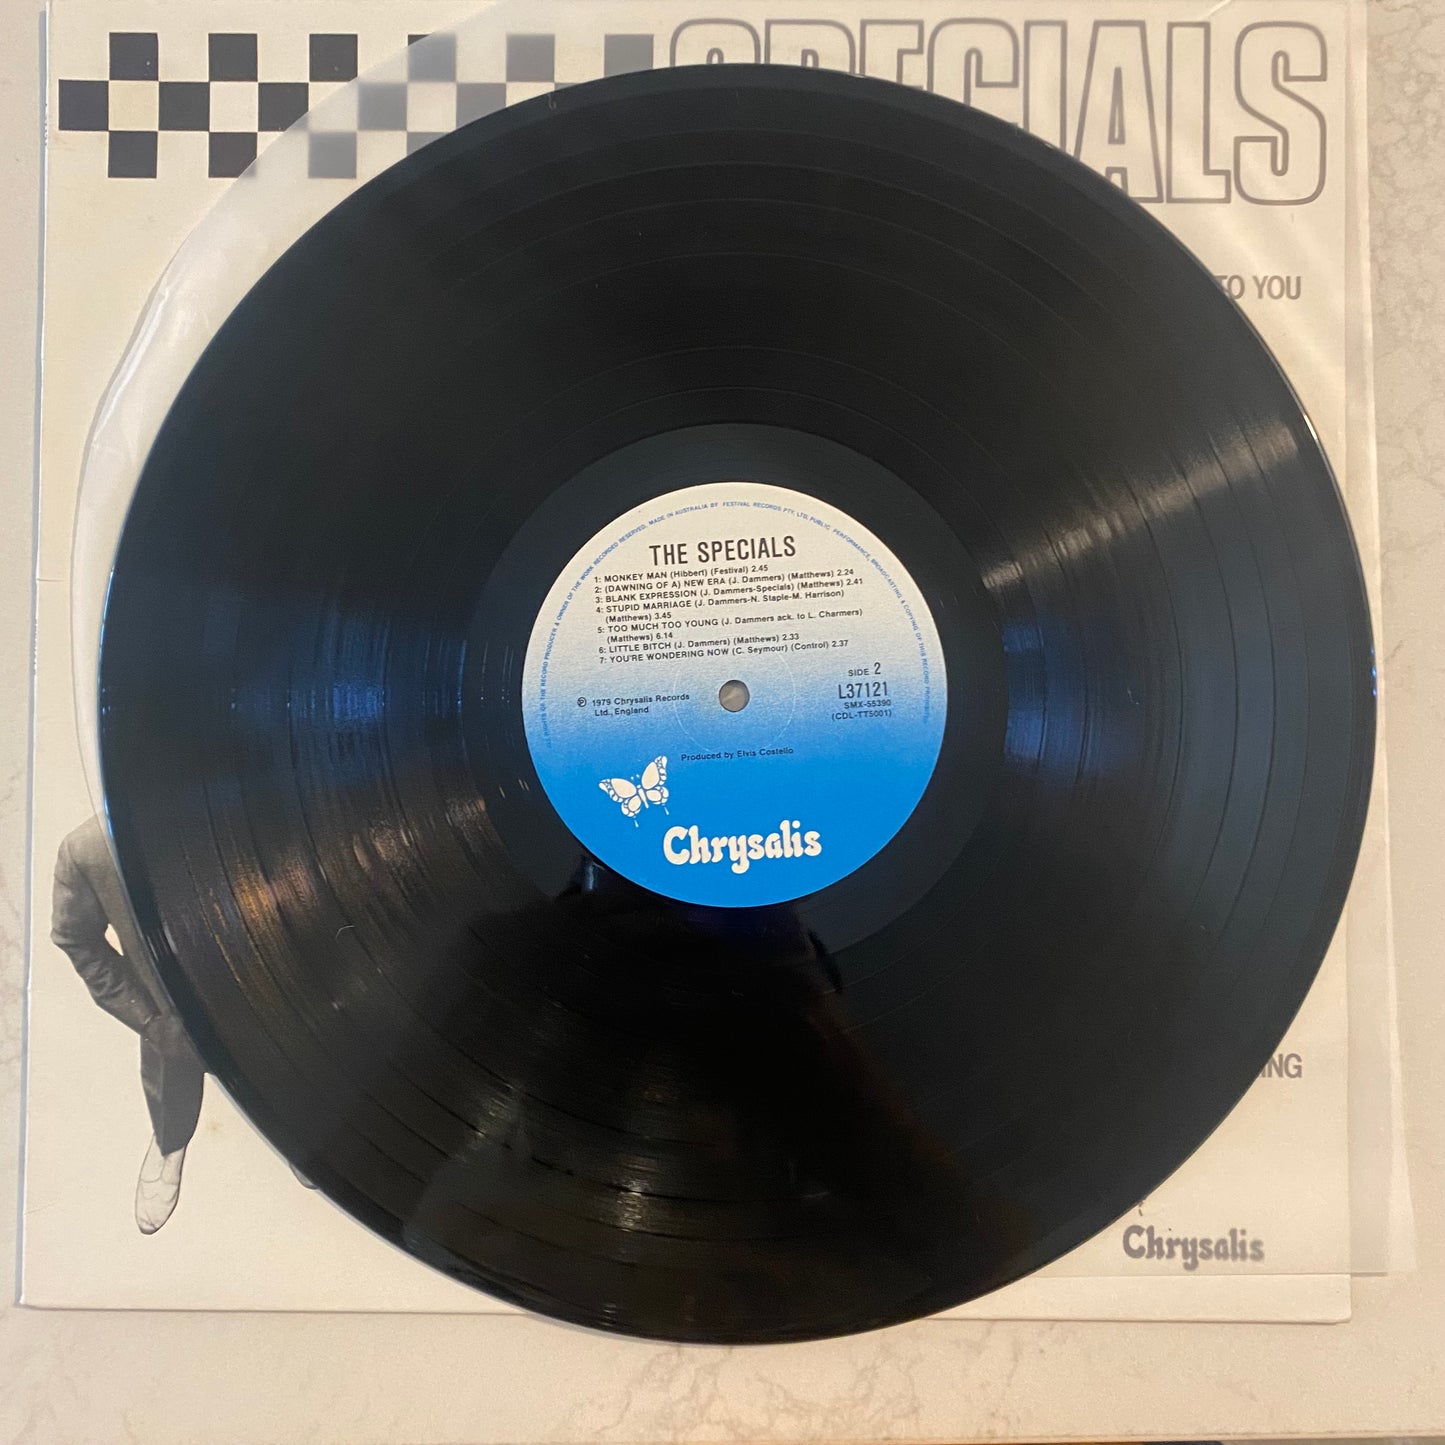 Specials* - Specials (LP, Album)